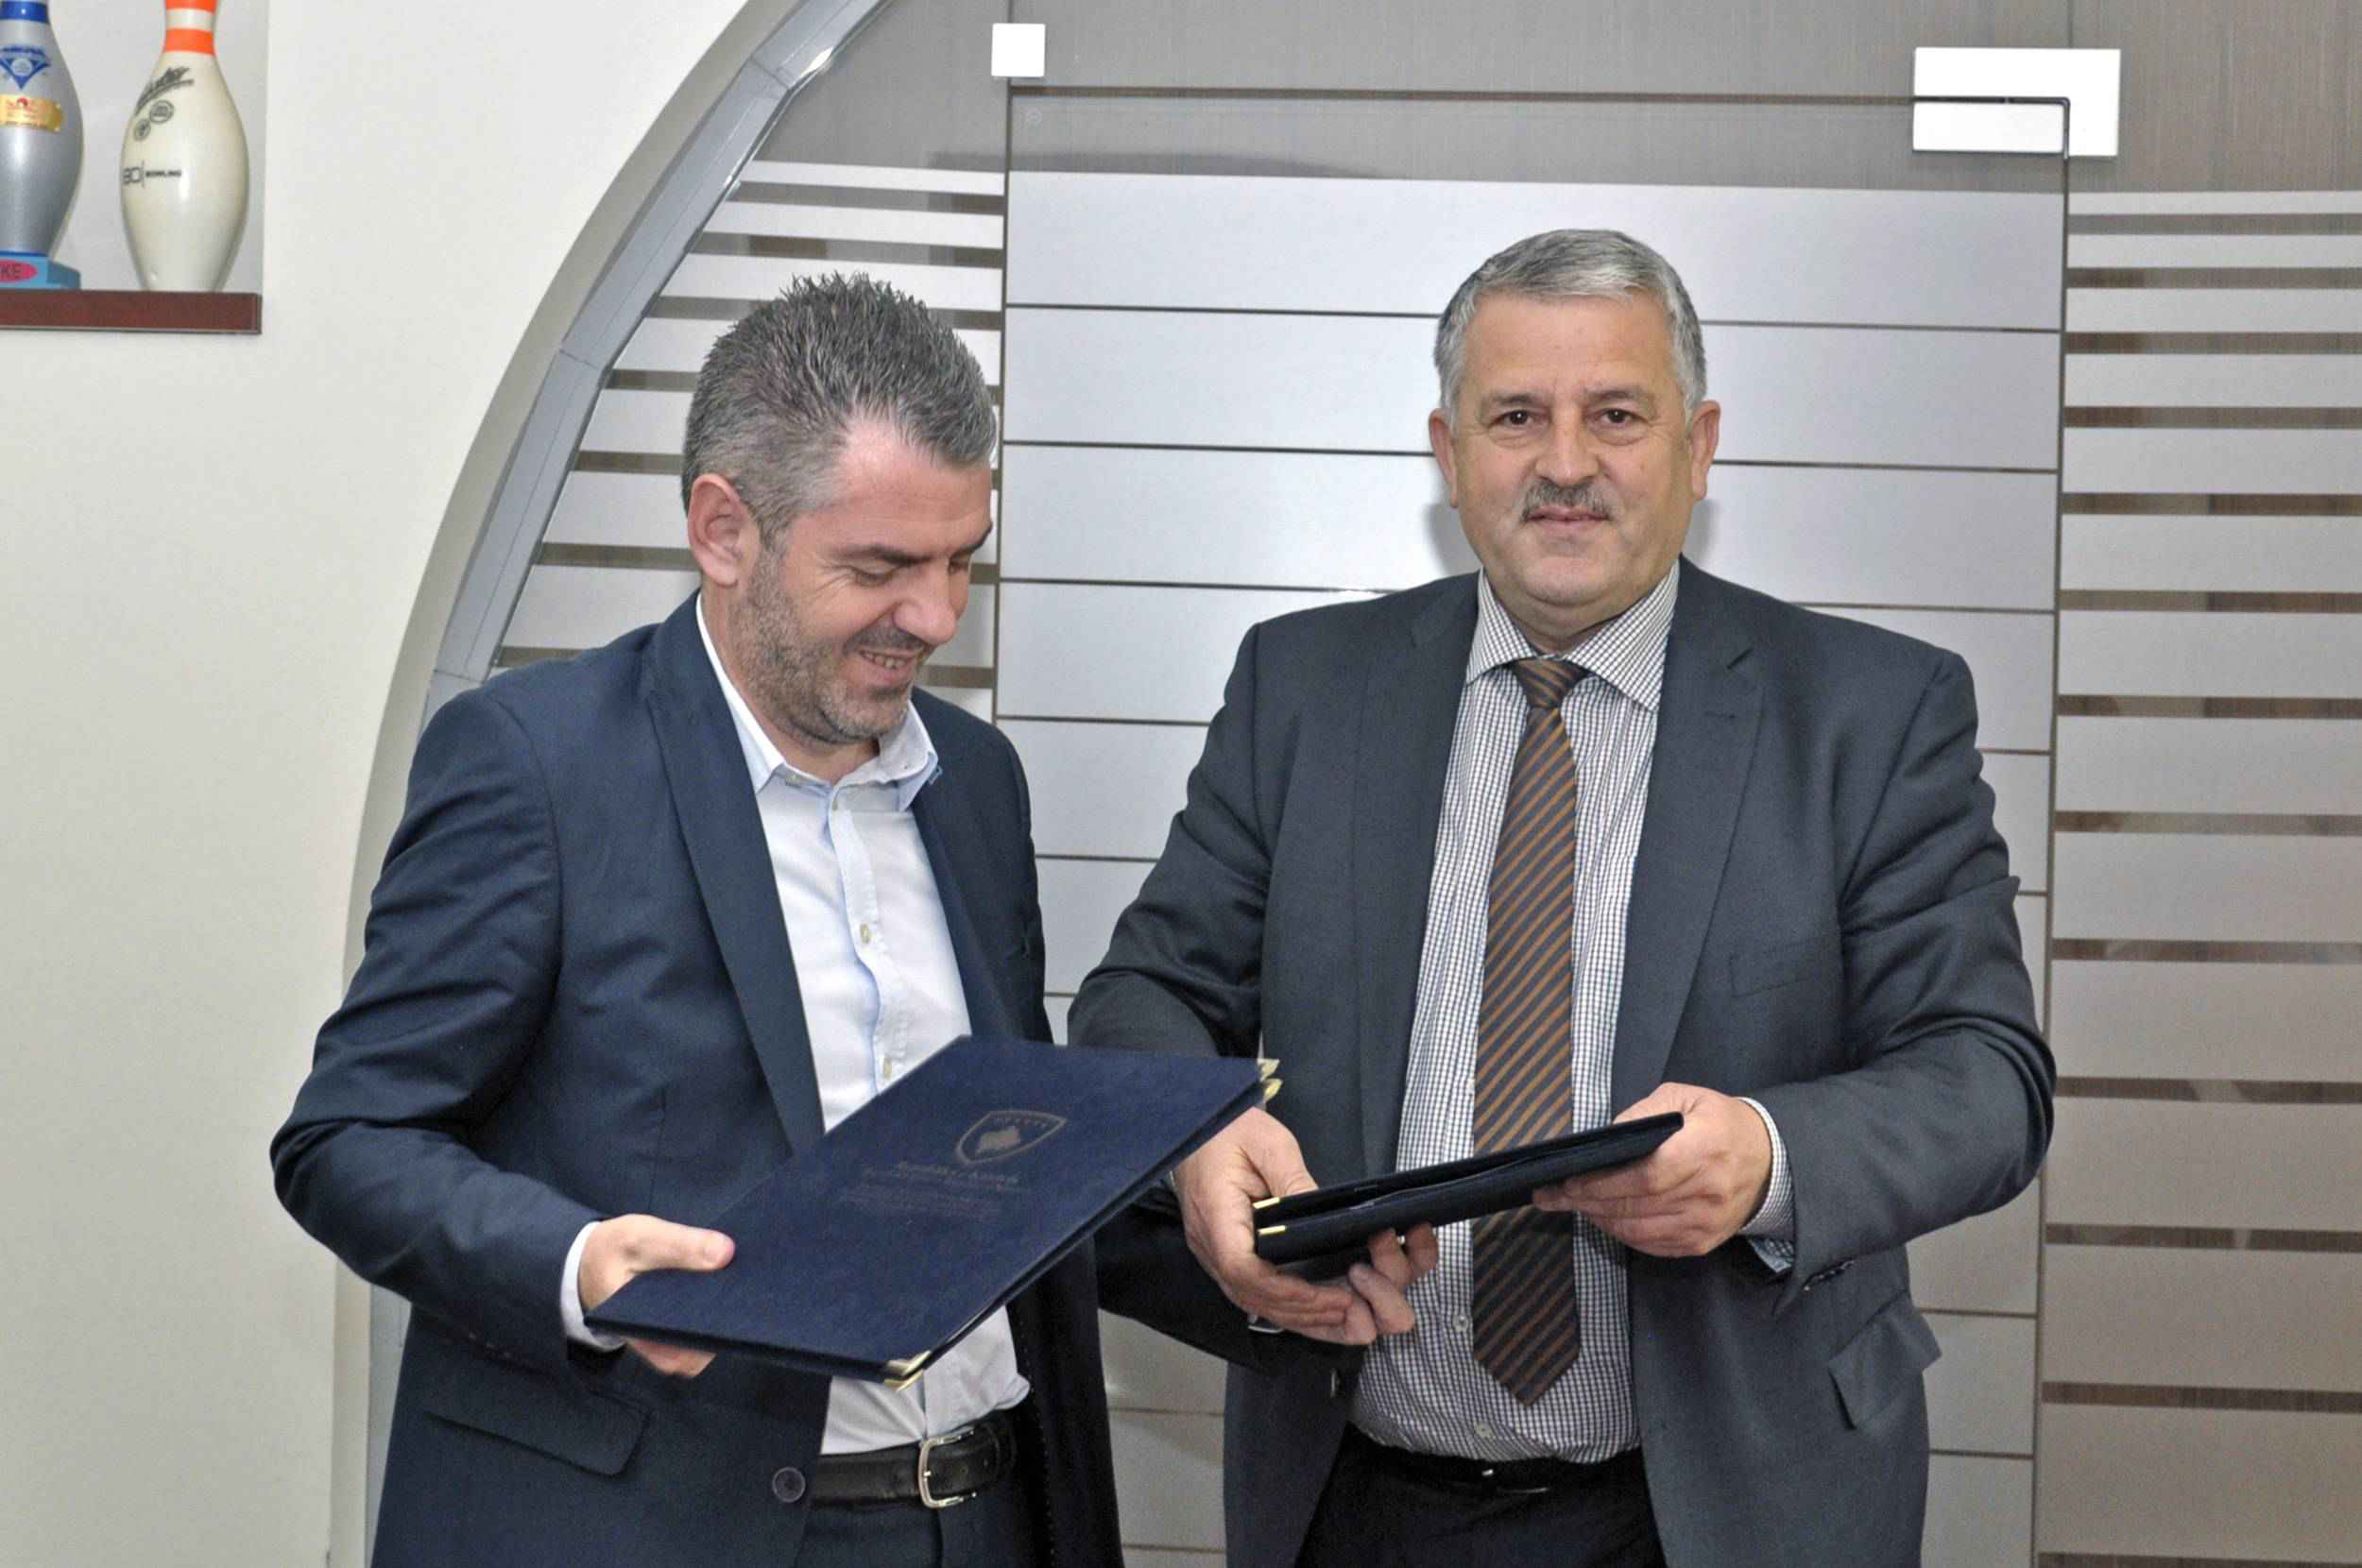   MKRS-ja investon 55 mijë euro në Podujevë